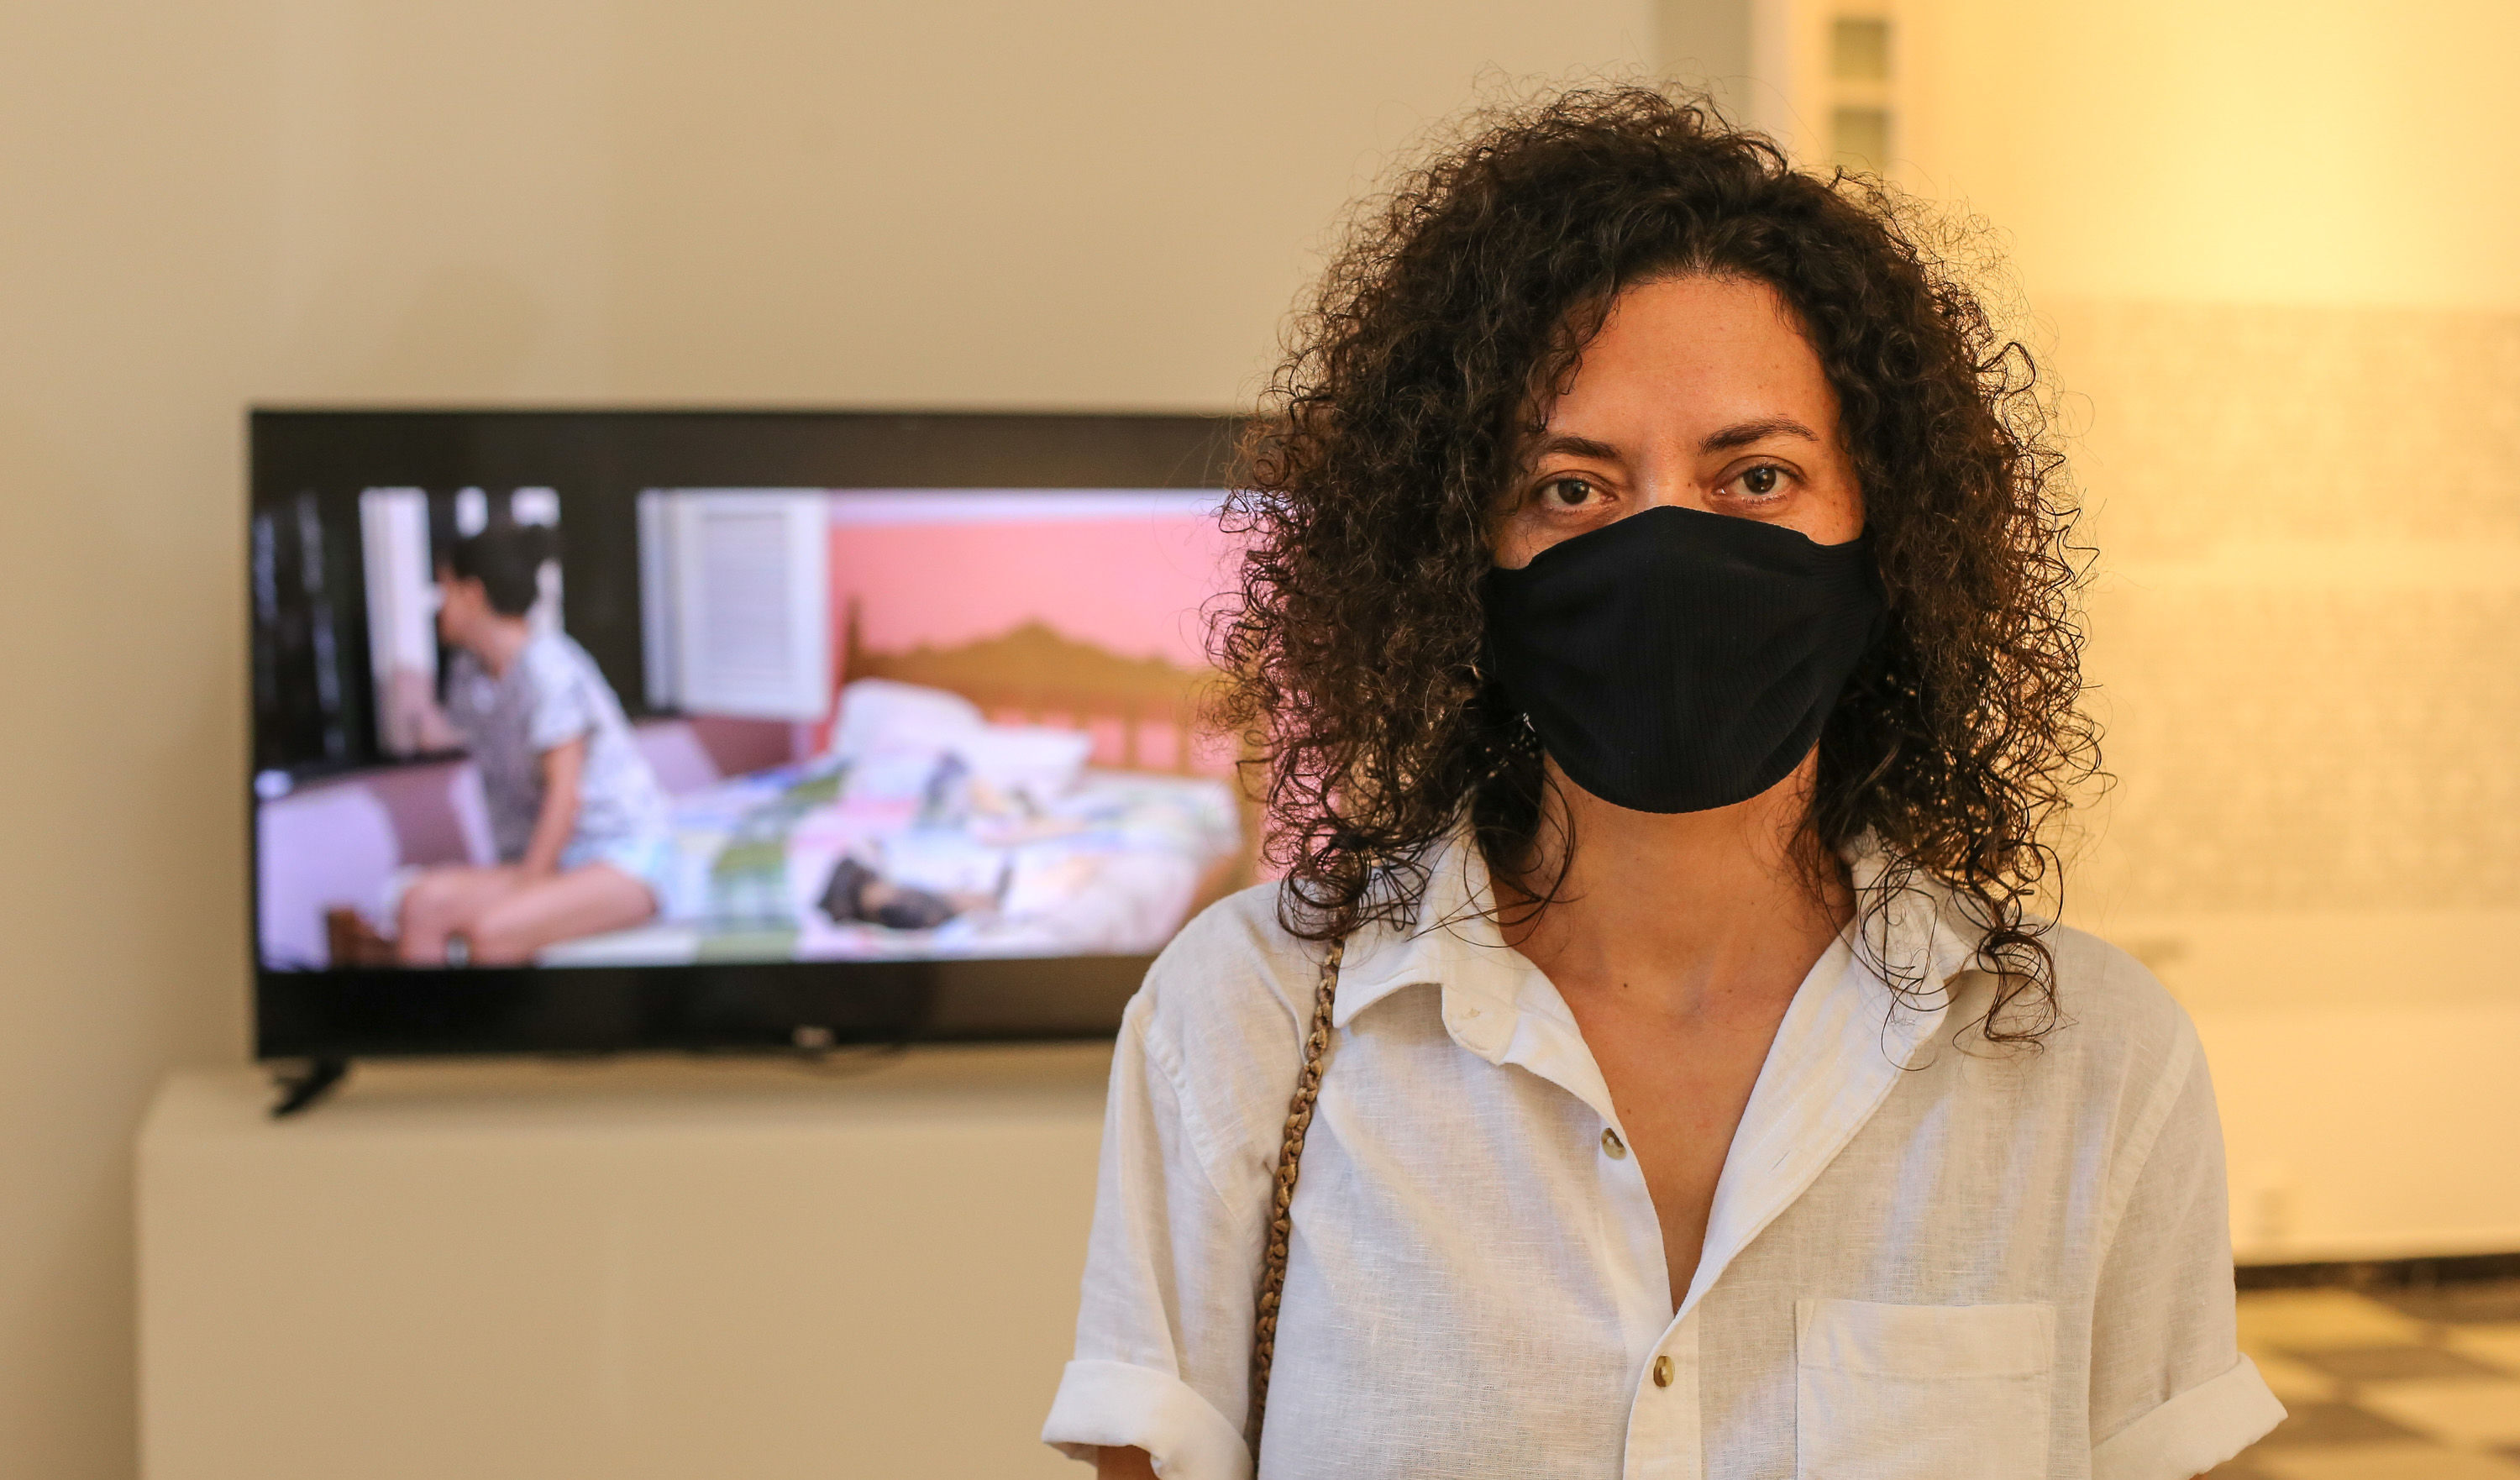 A artista plástica Nataly Rocha na frente de uma tela de TV que mostra sua videoarte